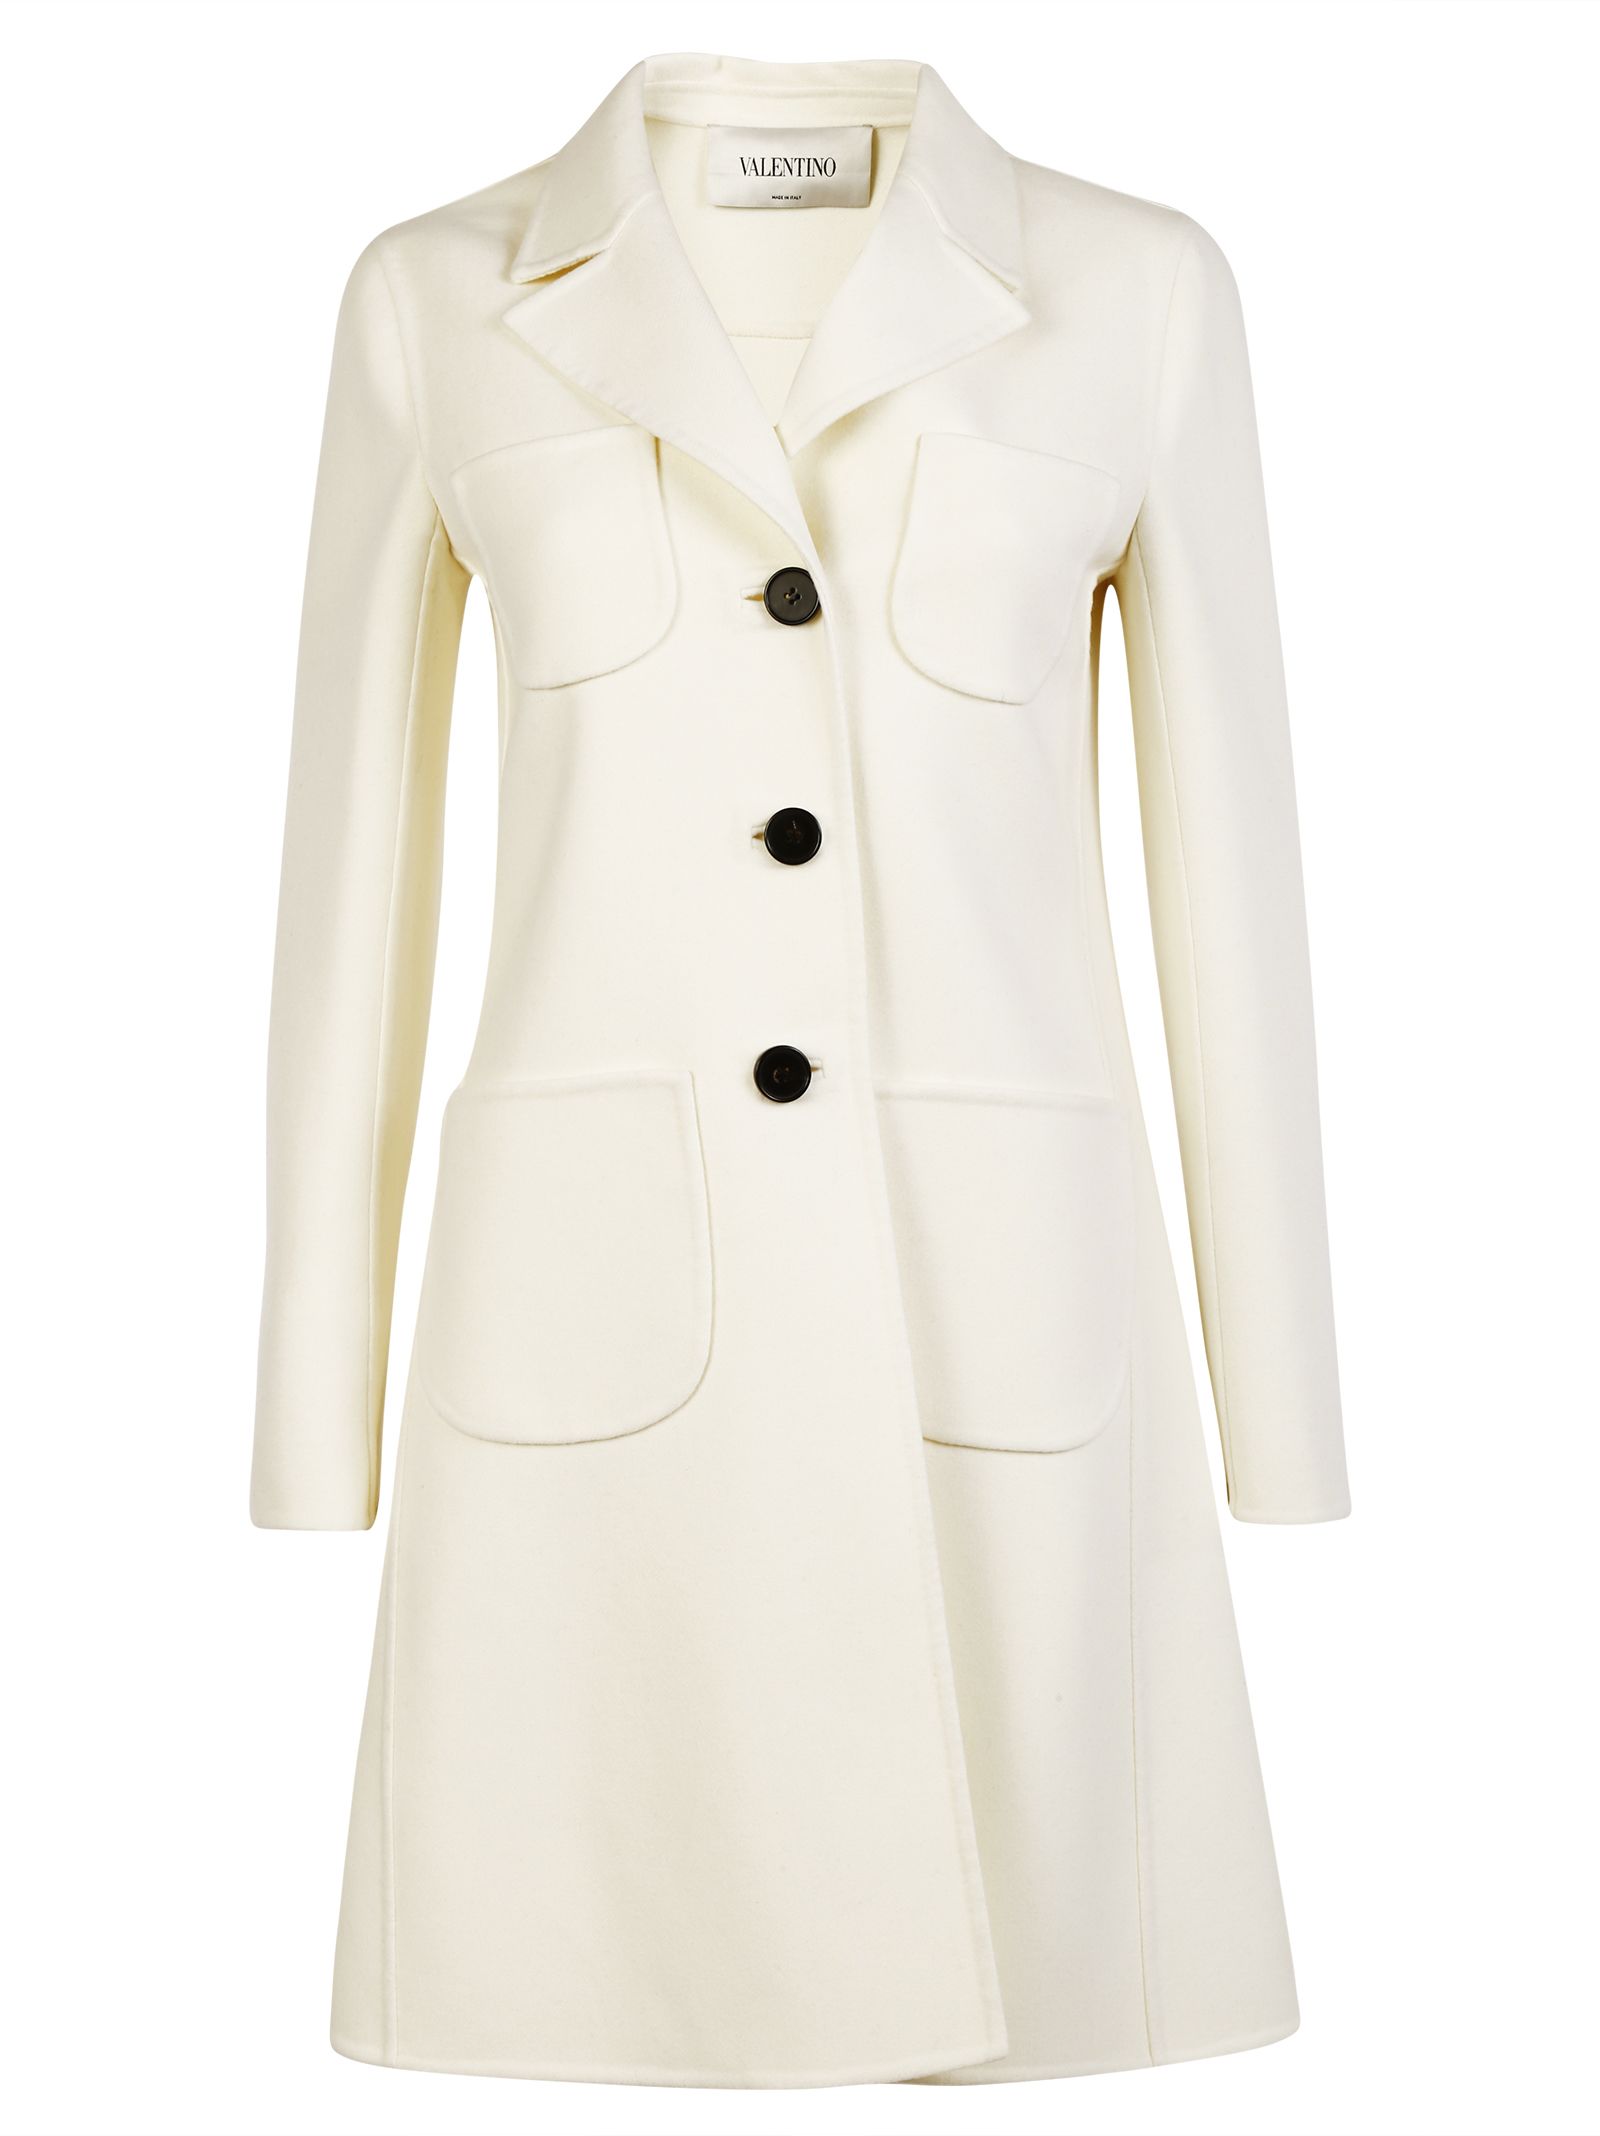 Valentino - Valentino Felt Coat - White, Women's Coats | Italist